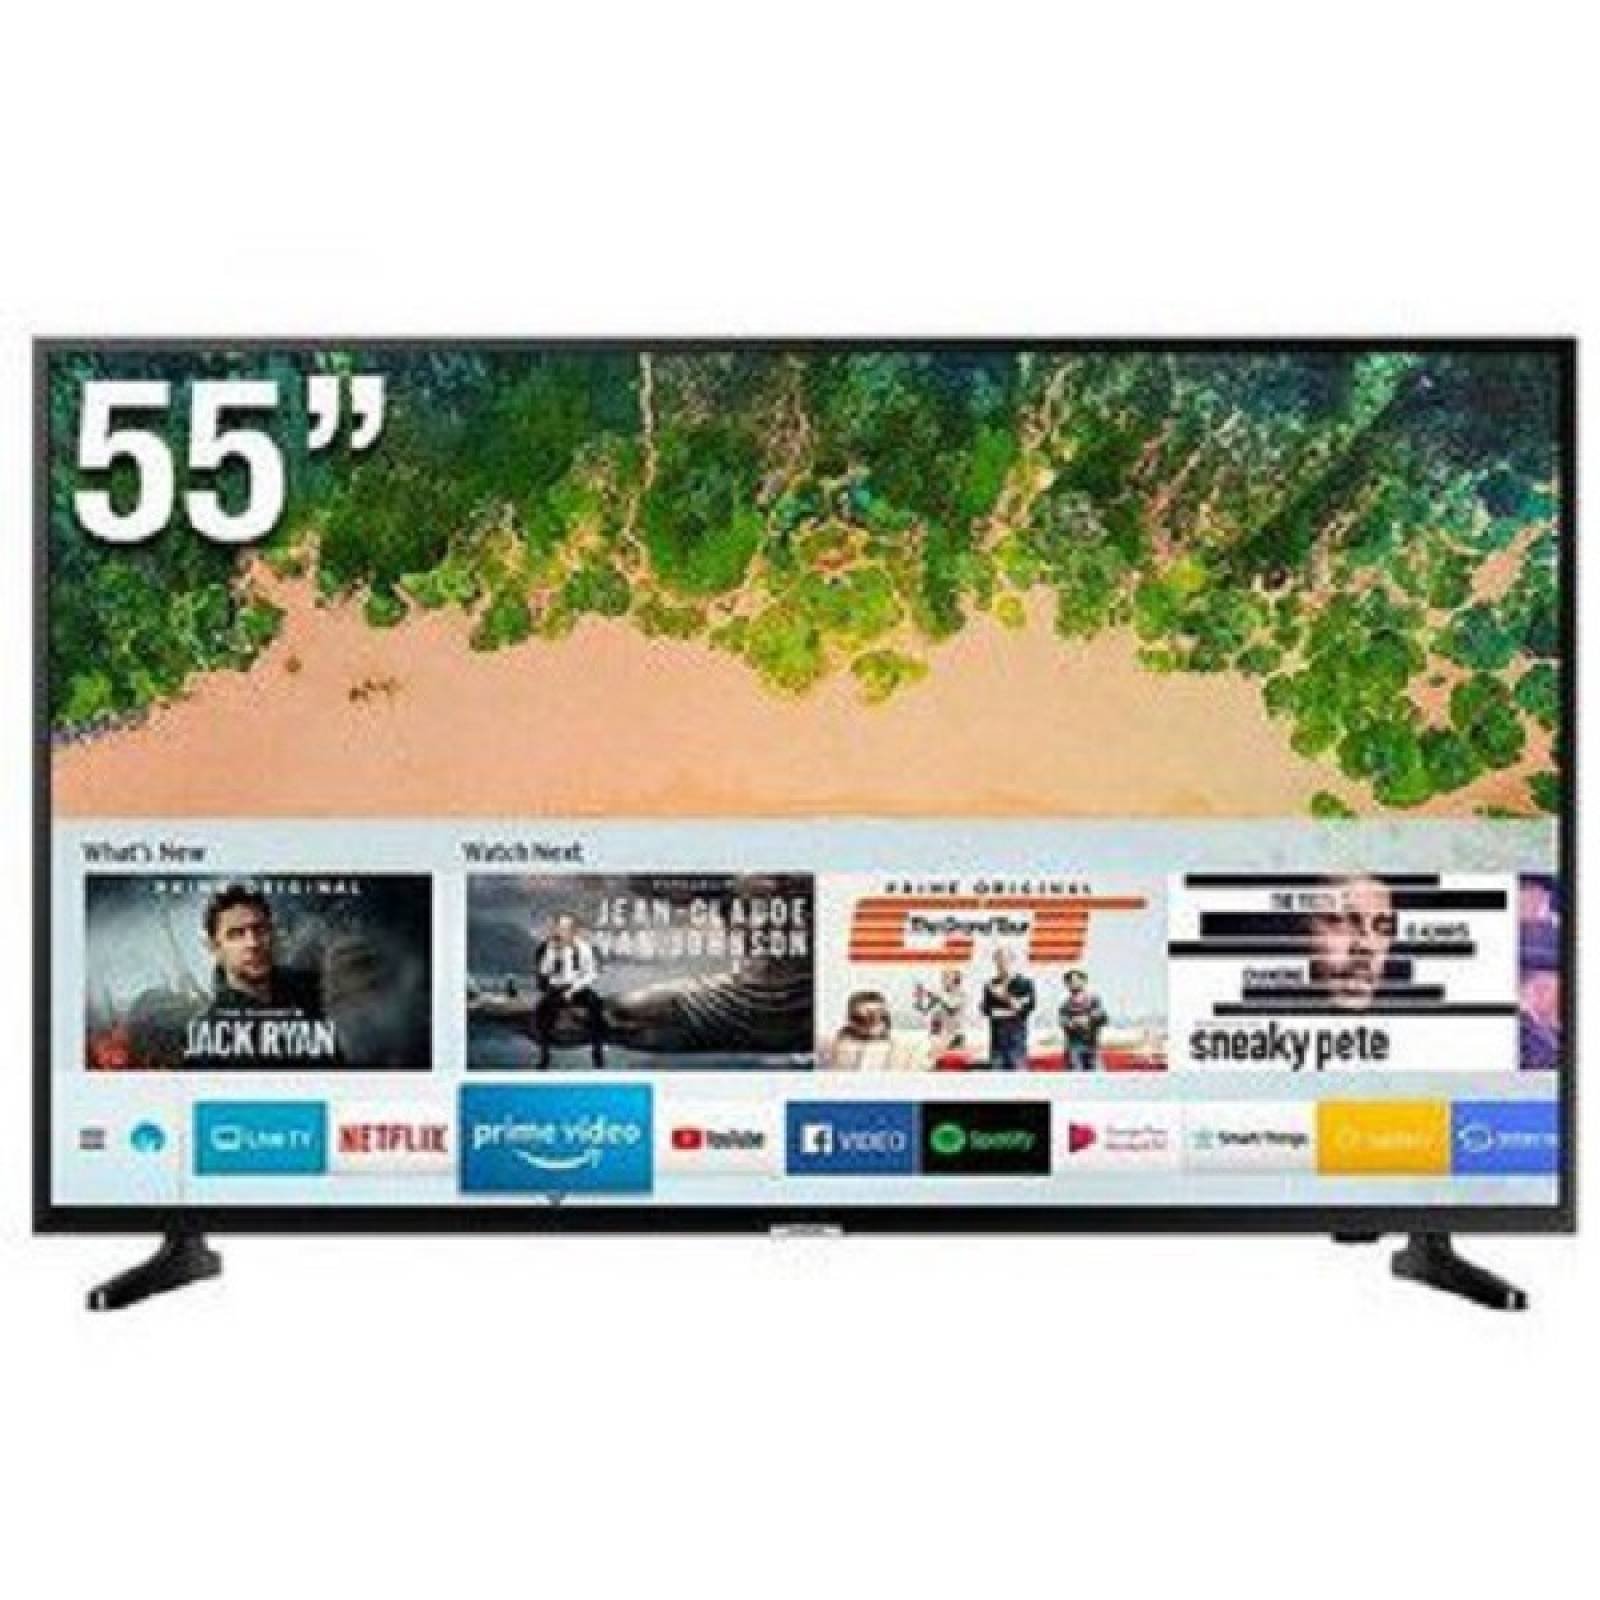 Smart TV 55 Samsung HDR10 PurColor 4K UHD UN55TU7000